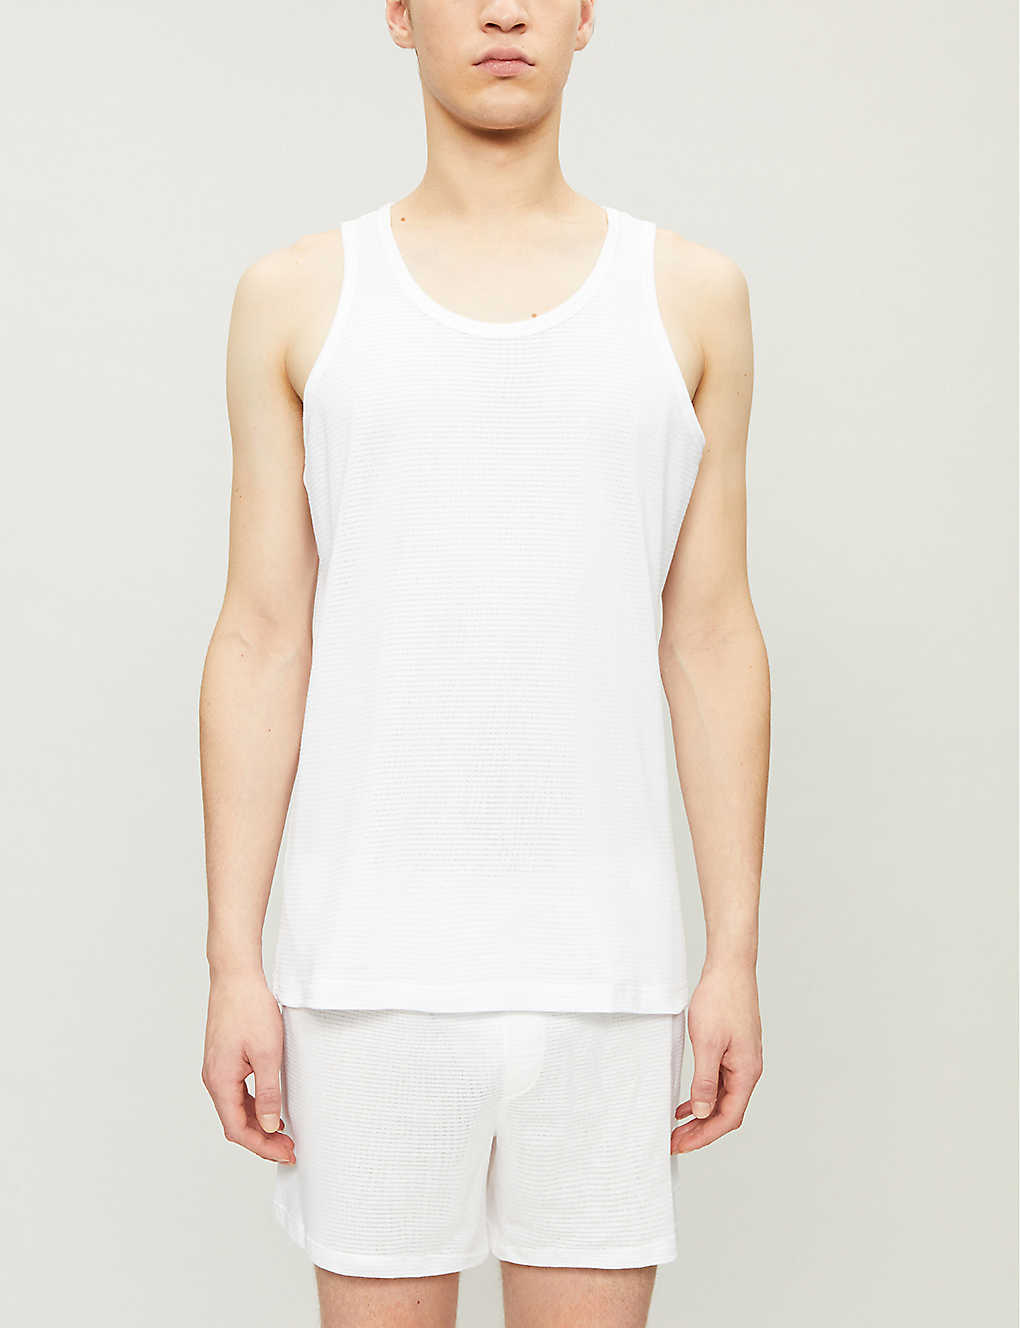 Sunspel Vintage Cellular White Singlet Vest 100% Cotton 